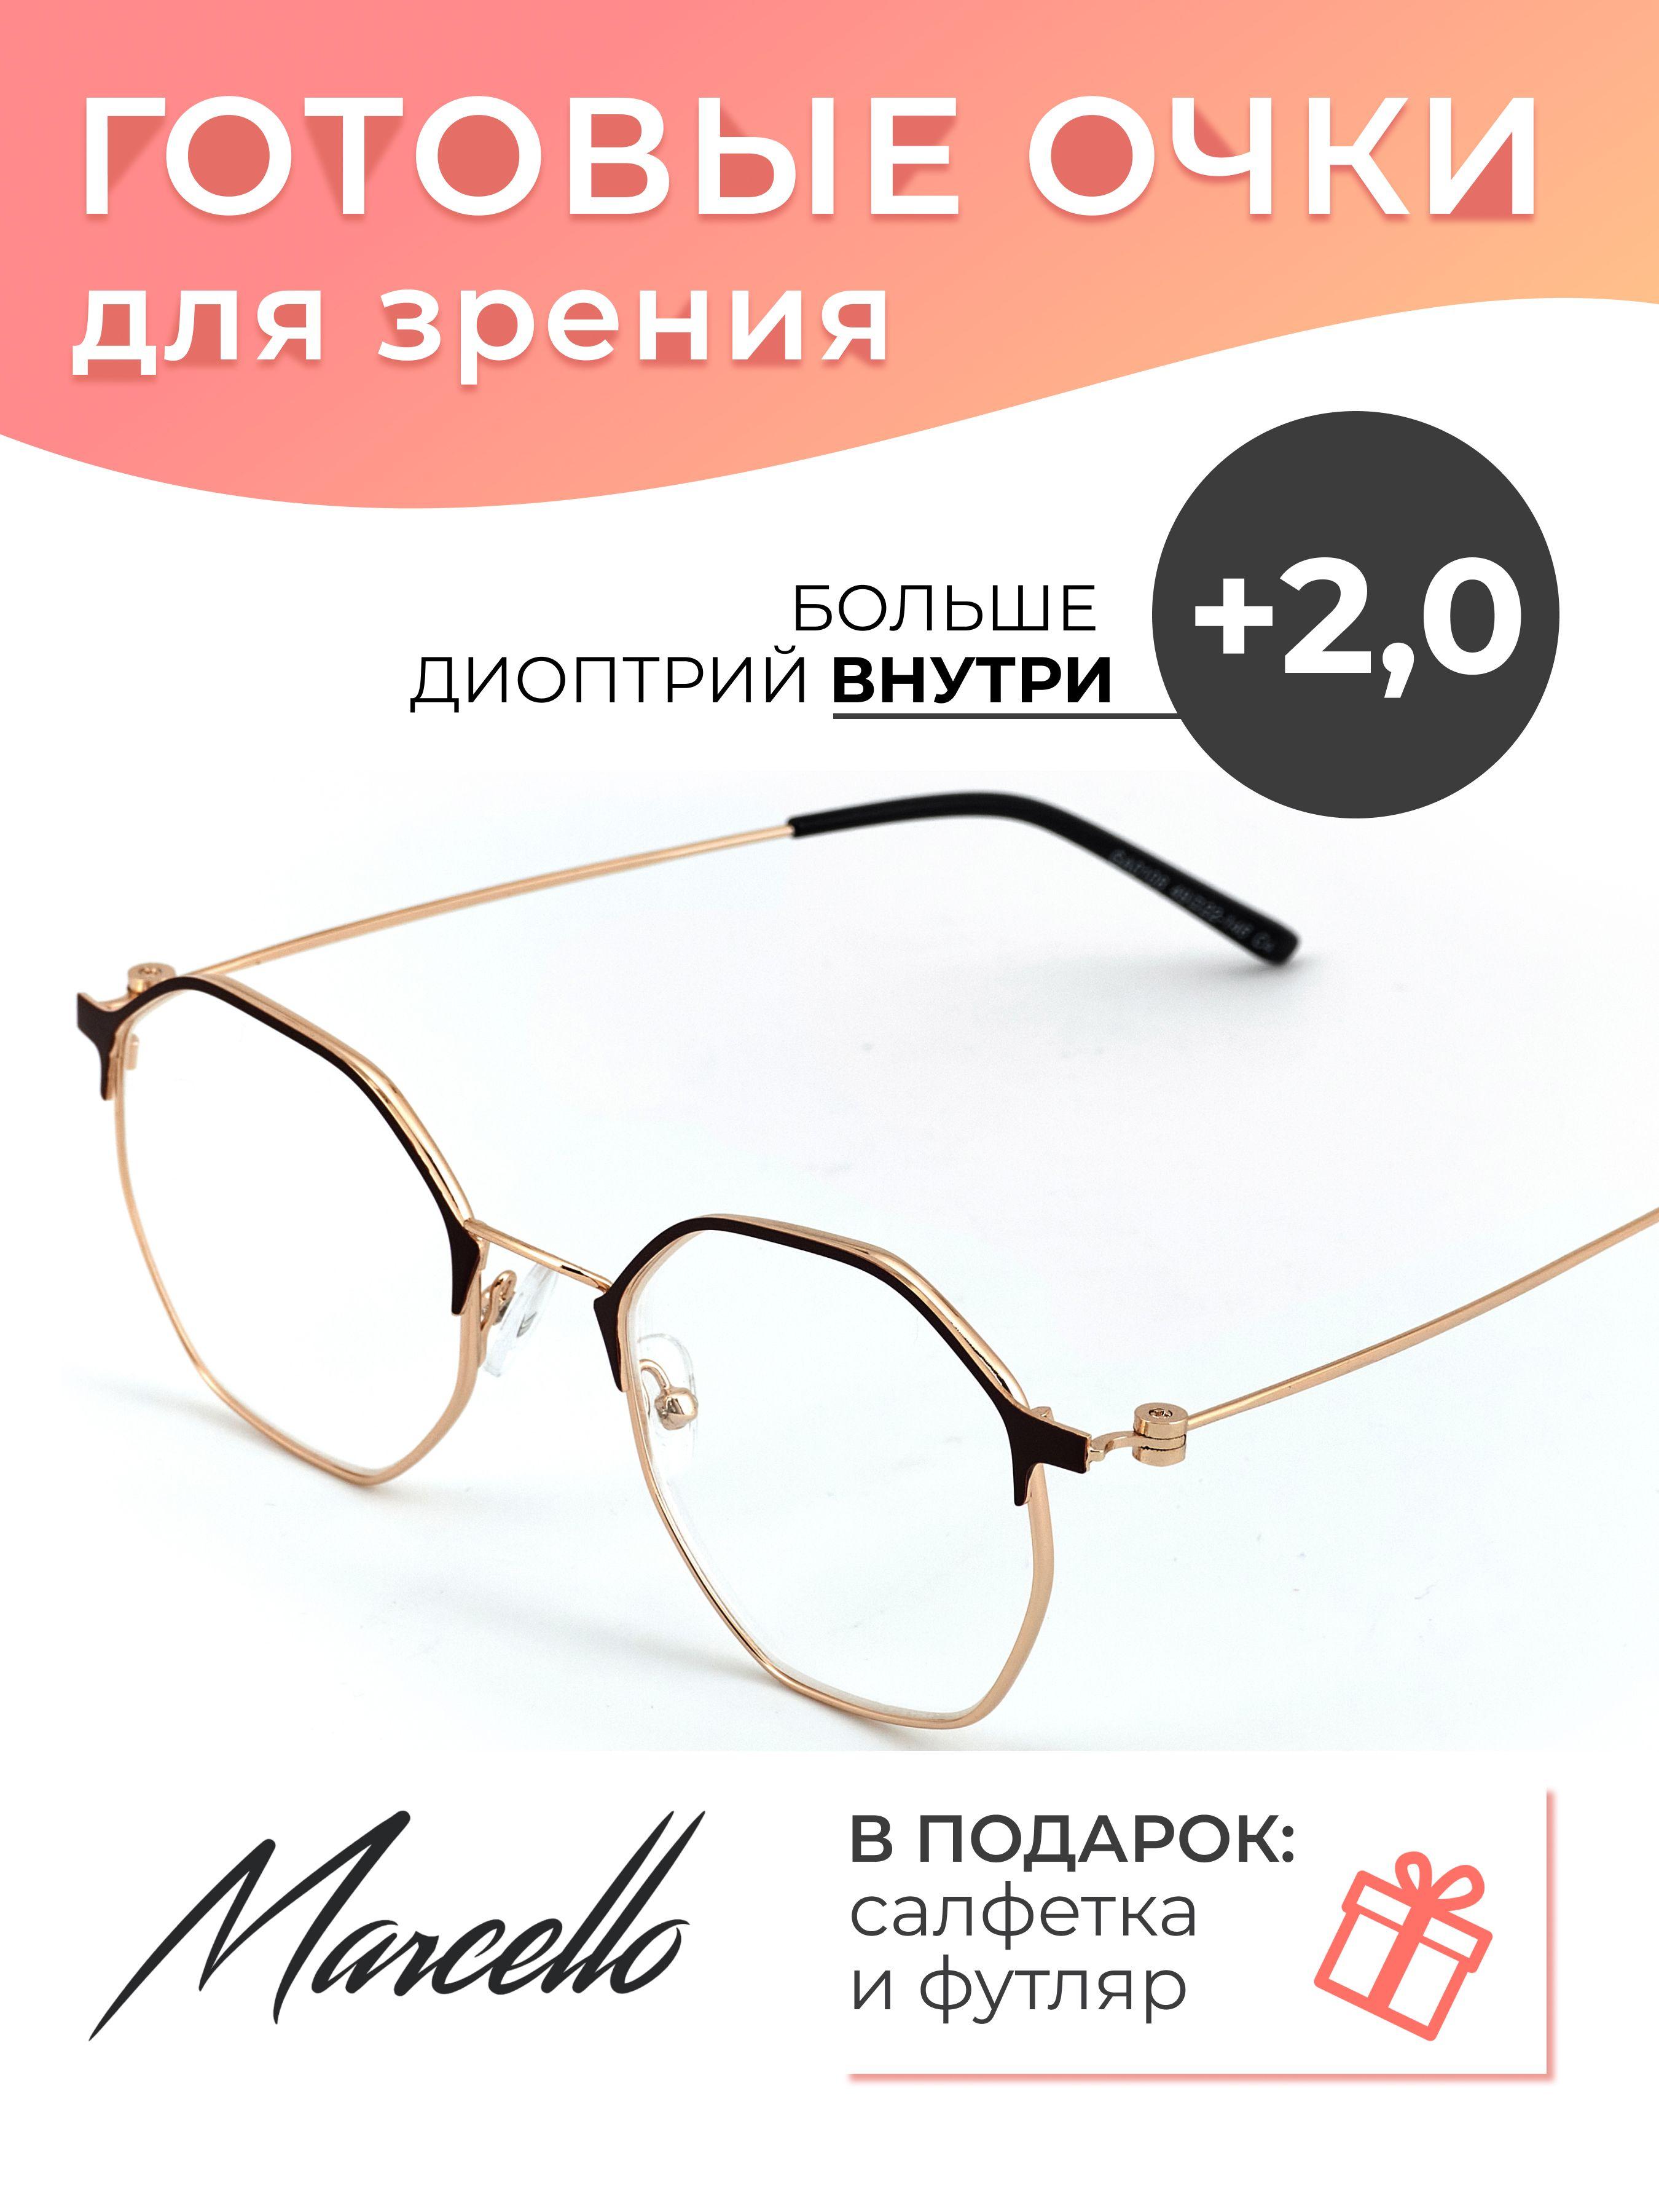 Marcello | Готовые очки для зрения корригирующие Marcello GA0108 C1 с диоптриями +2 для чтения на плюс, очки круглые, очки металлические, очки в футляре.